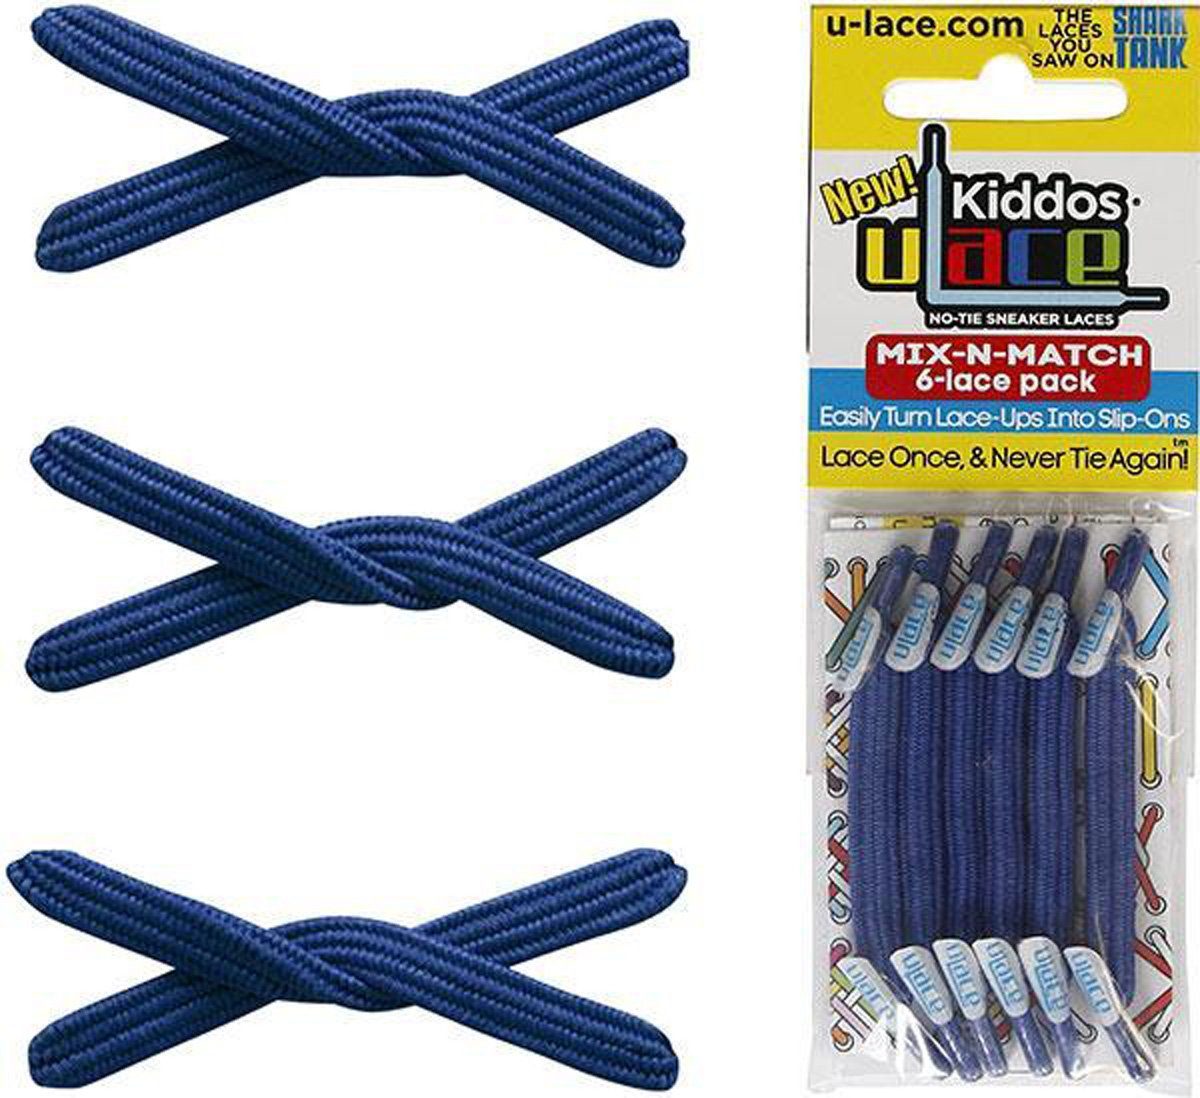 U-Laces Schnürsenkel Kiddos - elastische Schnürsenkel mit Wiederhaken für Kinder Royal Blue